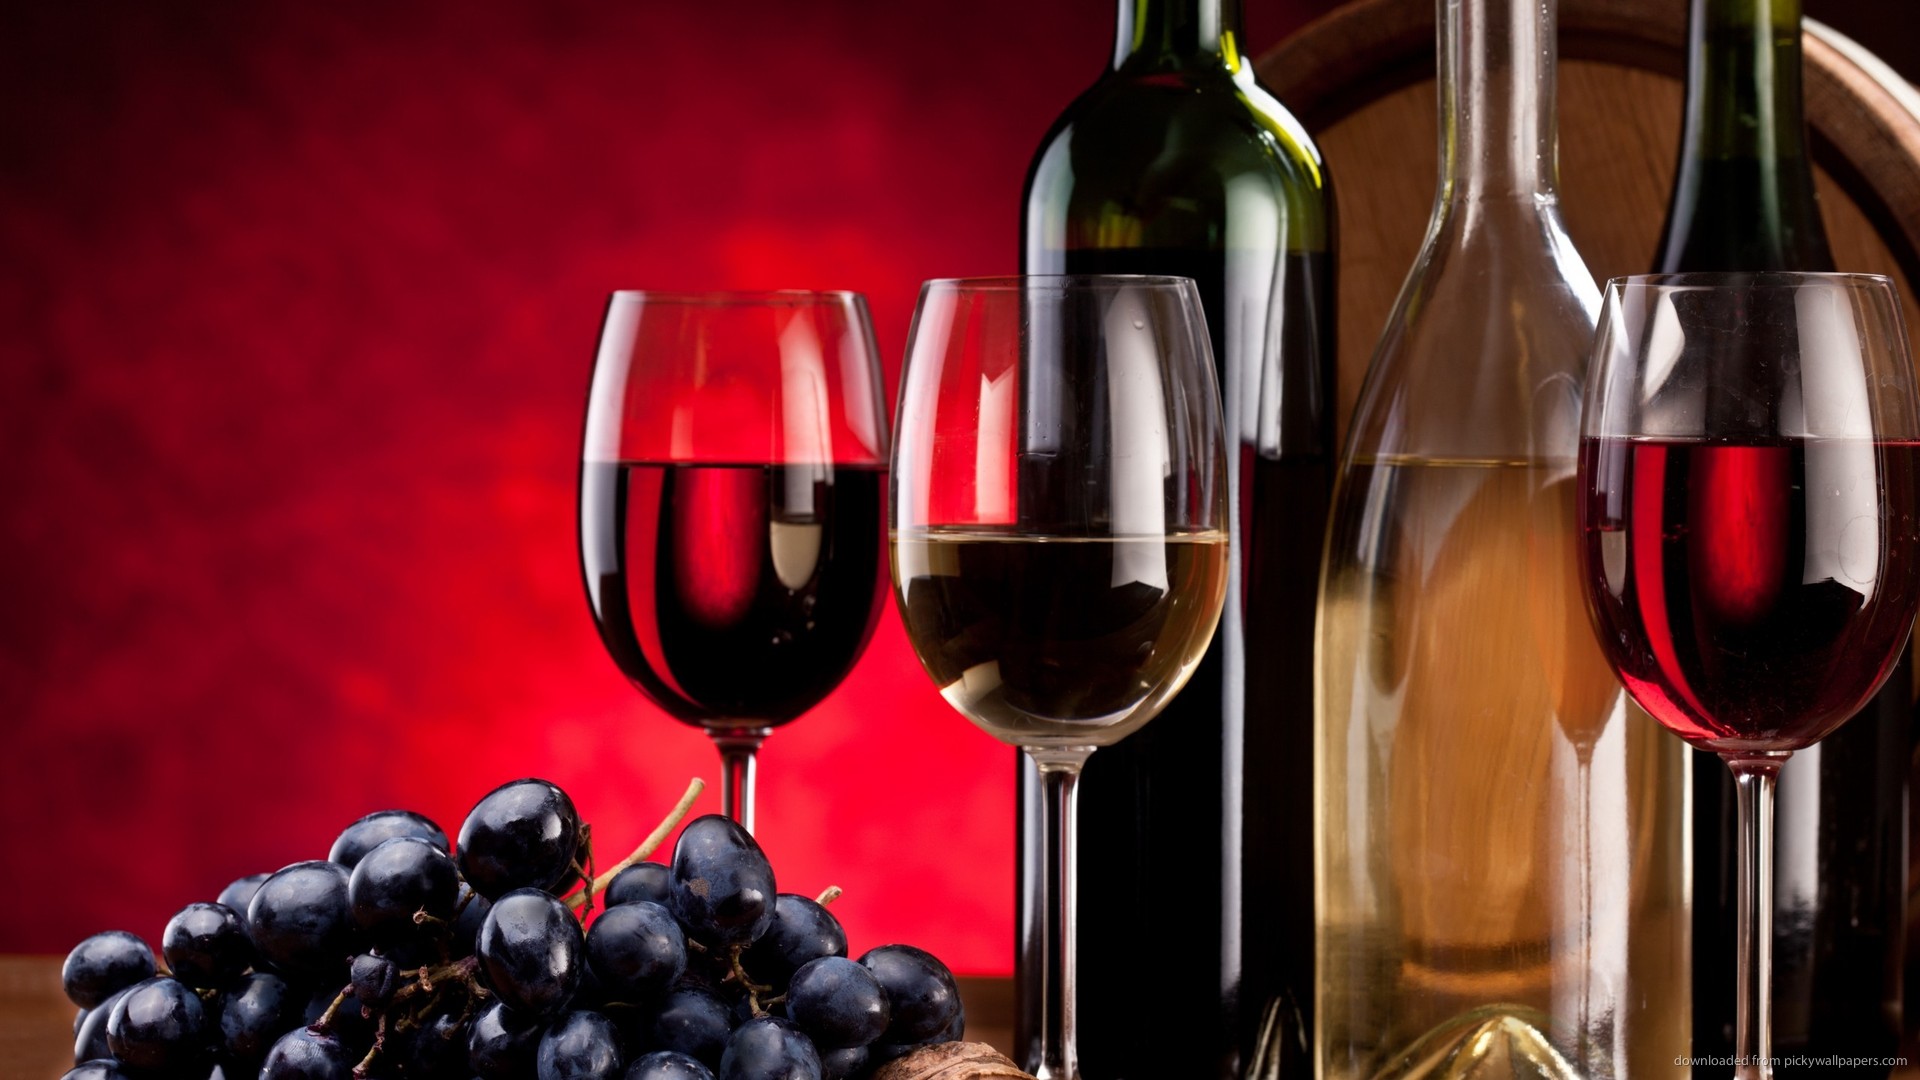 wine bottle wallpaper,wine glass,bottle,stemware,drink,red wine